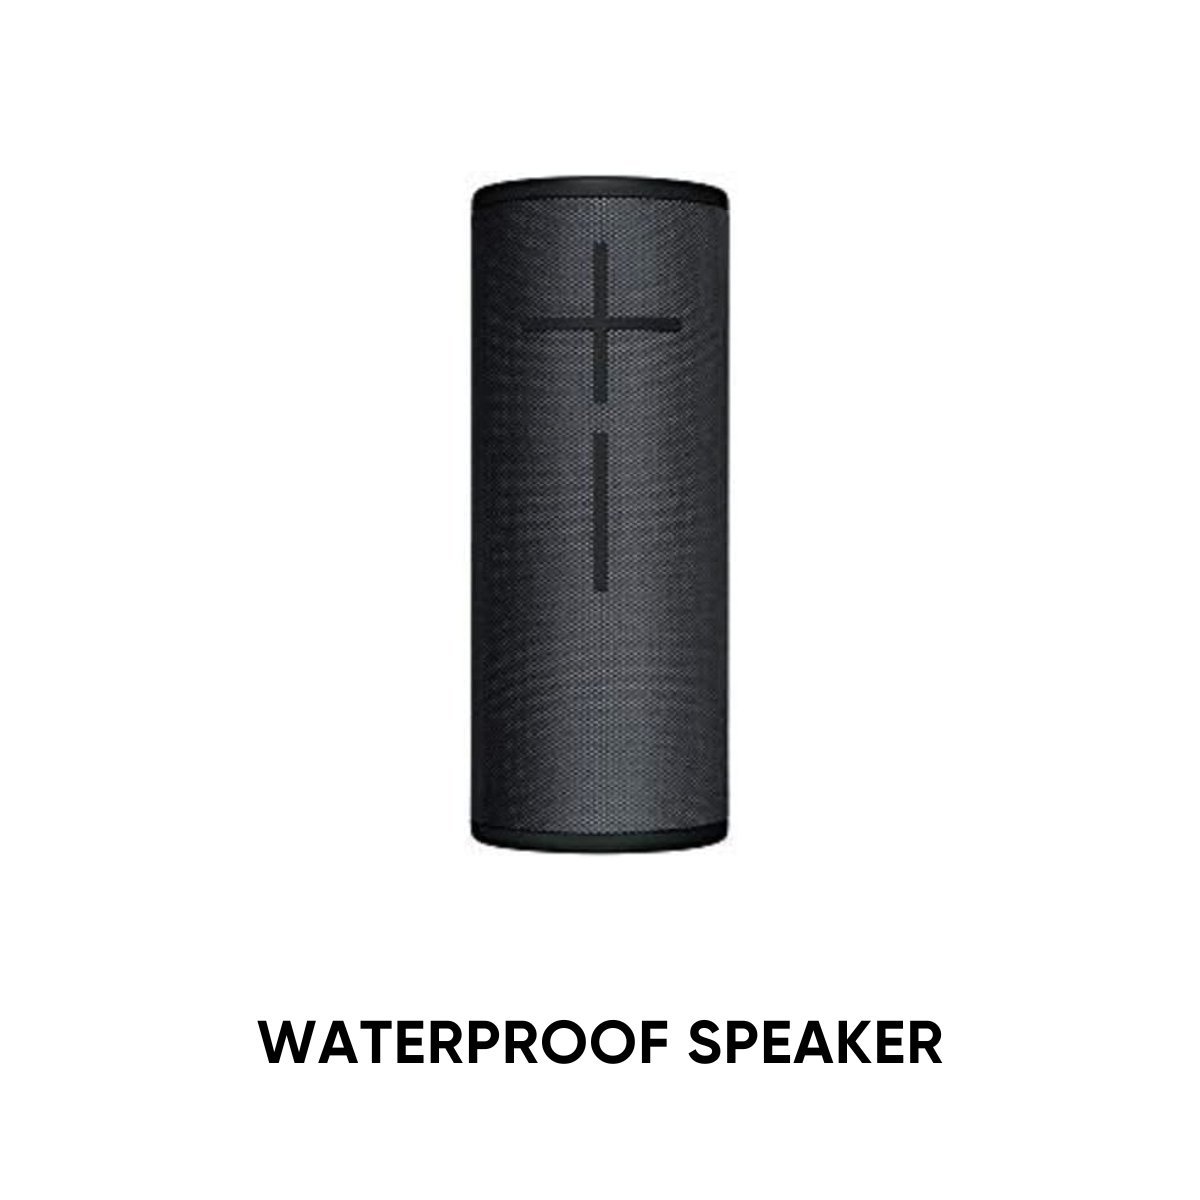 WATERPROOF SPEAKER.jpg